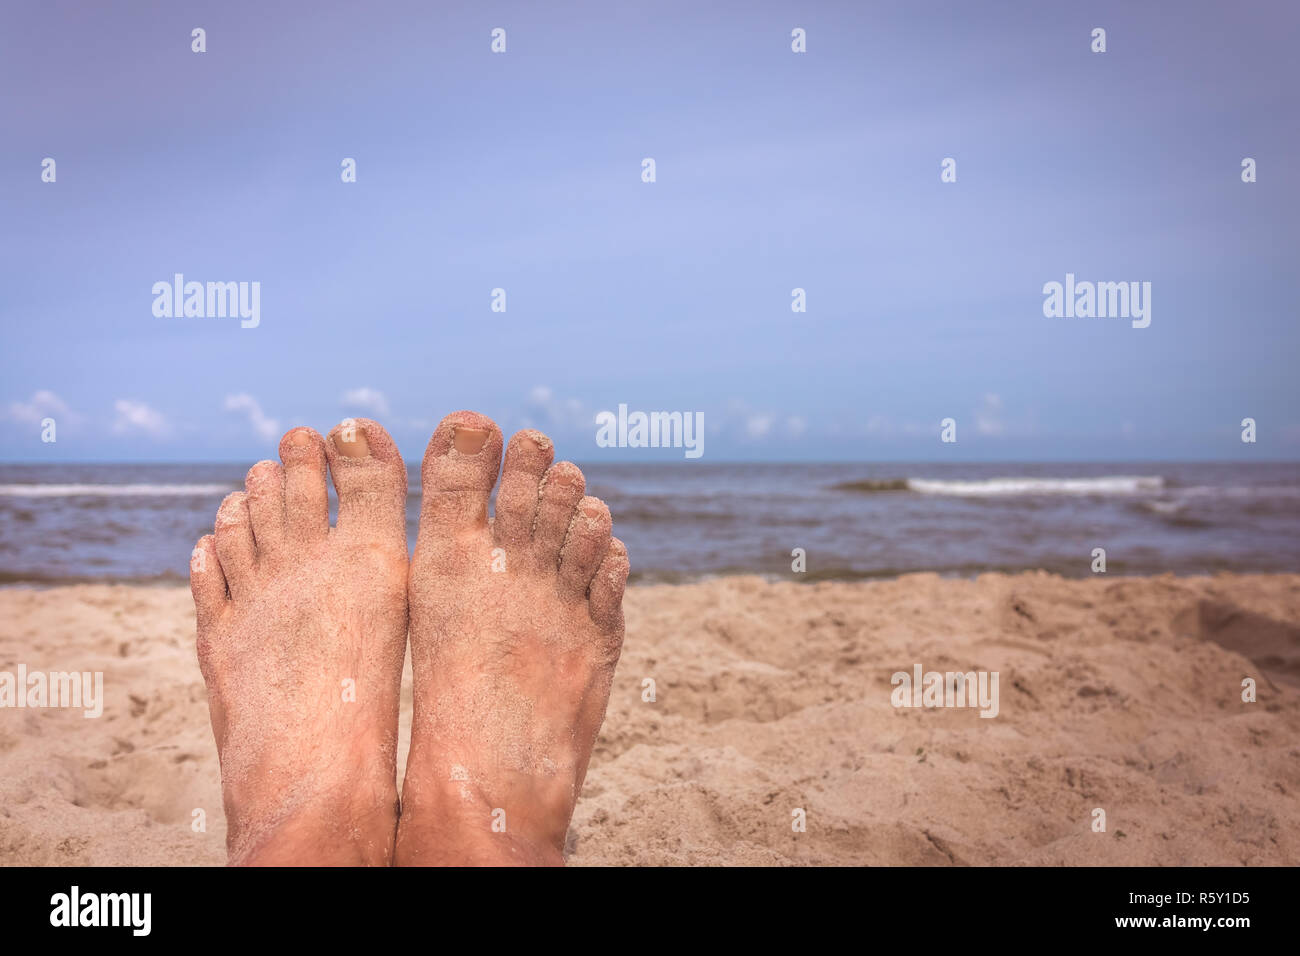 Mans feet on the beach Stock Photo